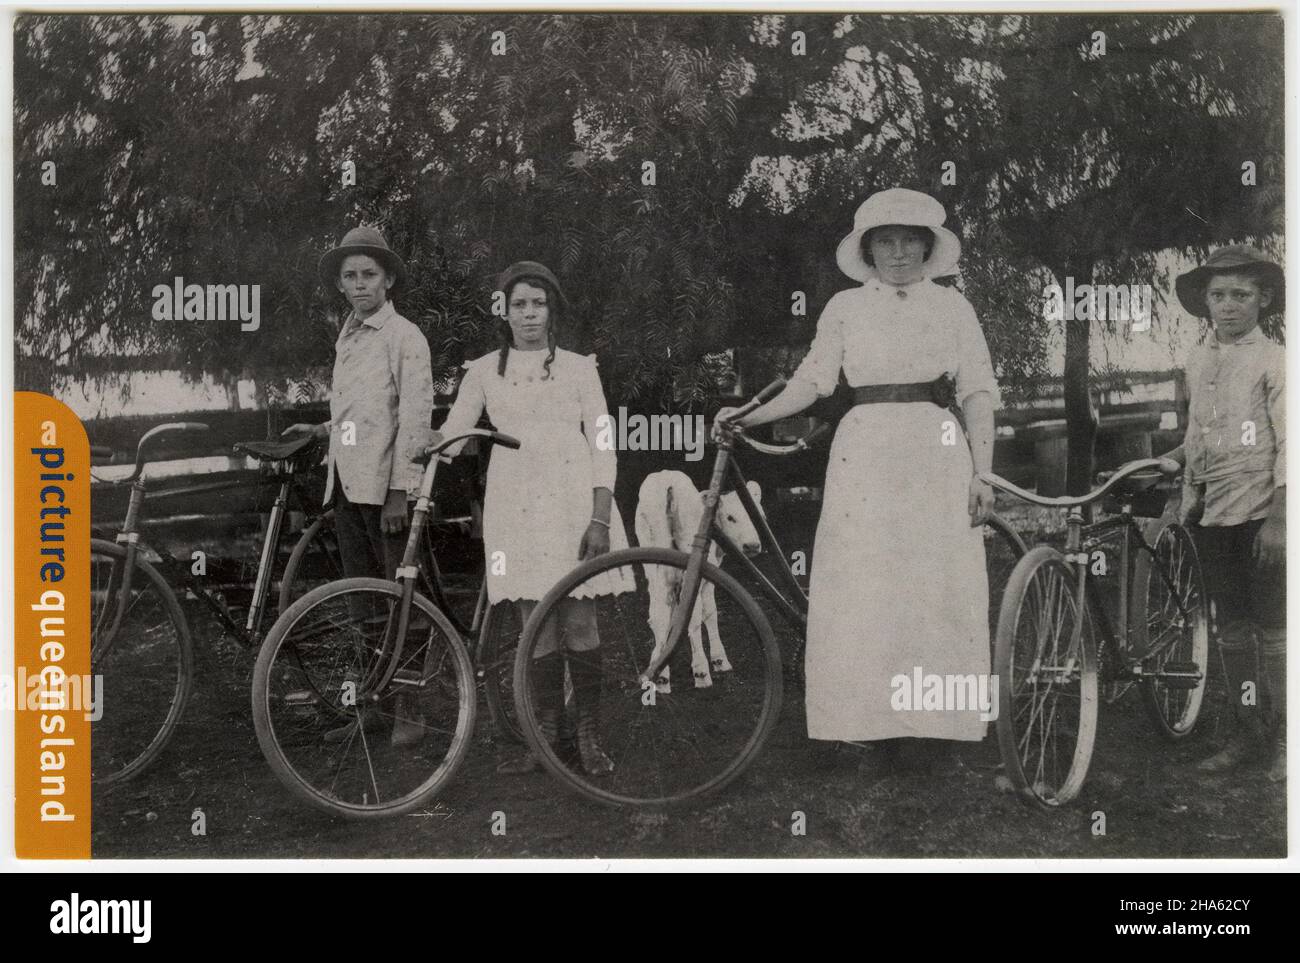 Cartolina che presenta una scena storica dei Queenslanders e delle loro biciclette; pubblicato circa 1980 Foto Stock